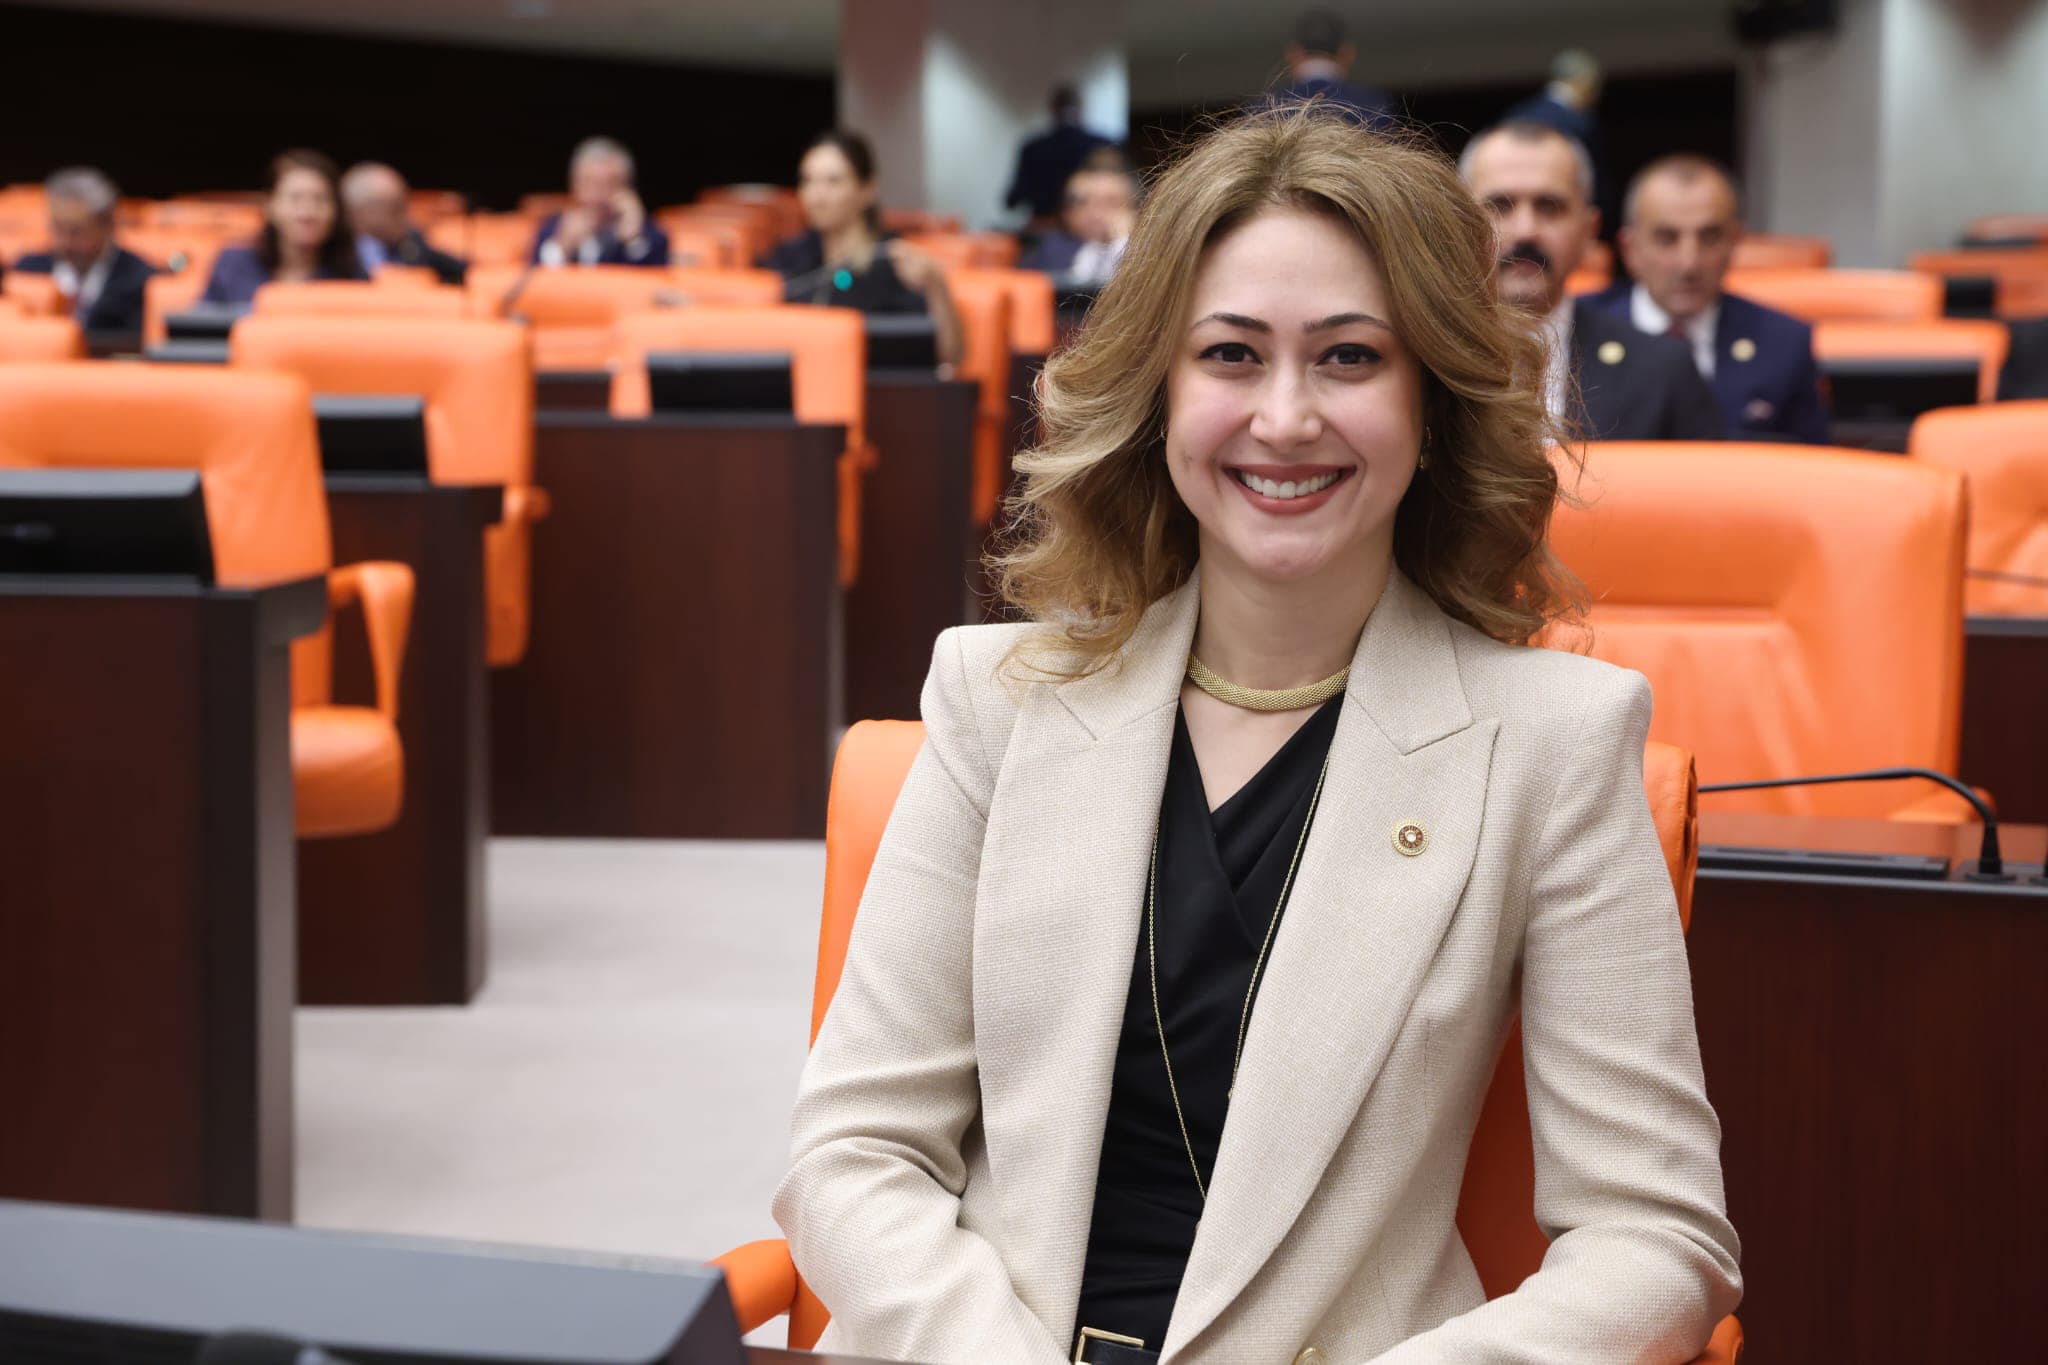 Milletvekili Karakoç Dora: Unutulmamalıyız ki kadının yükselişi toplumun yükselişidir